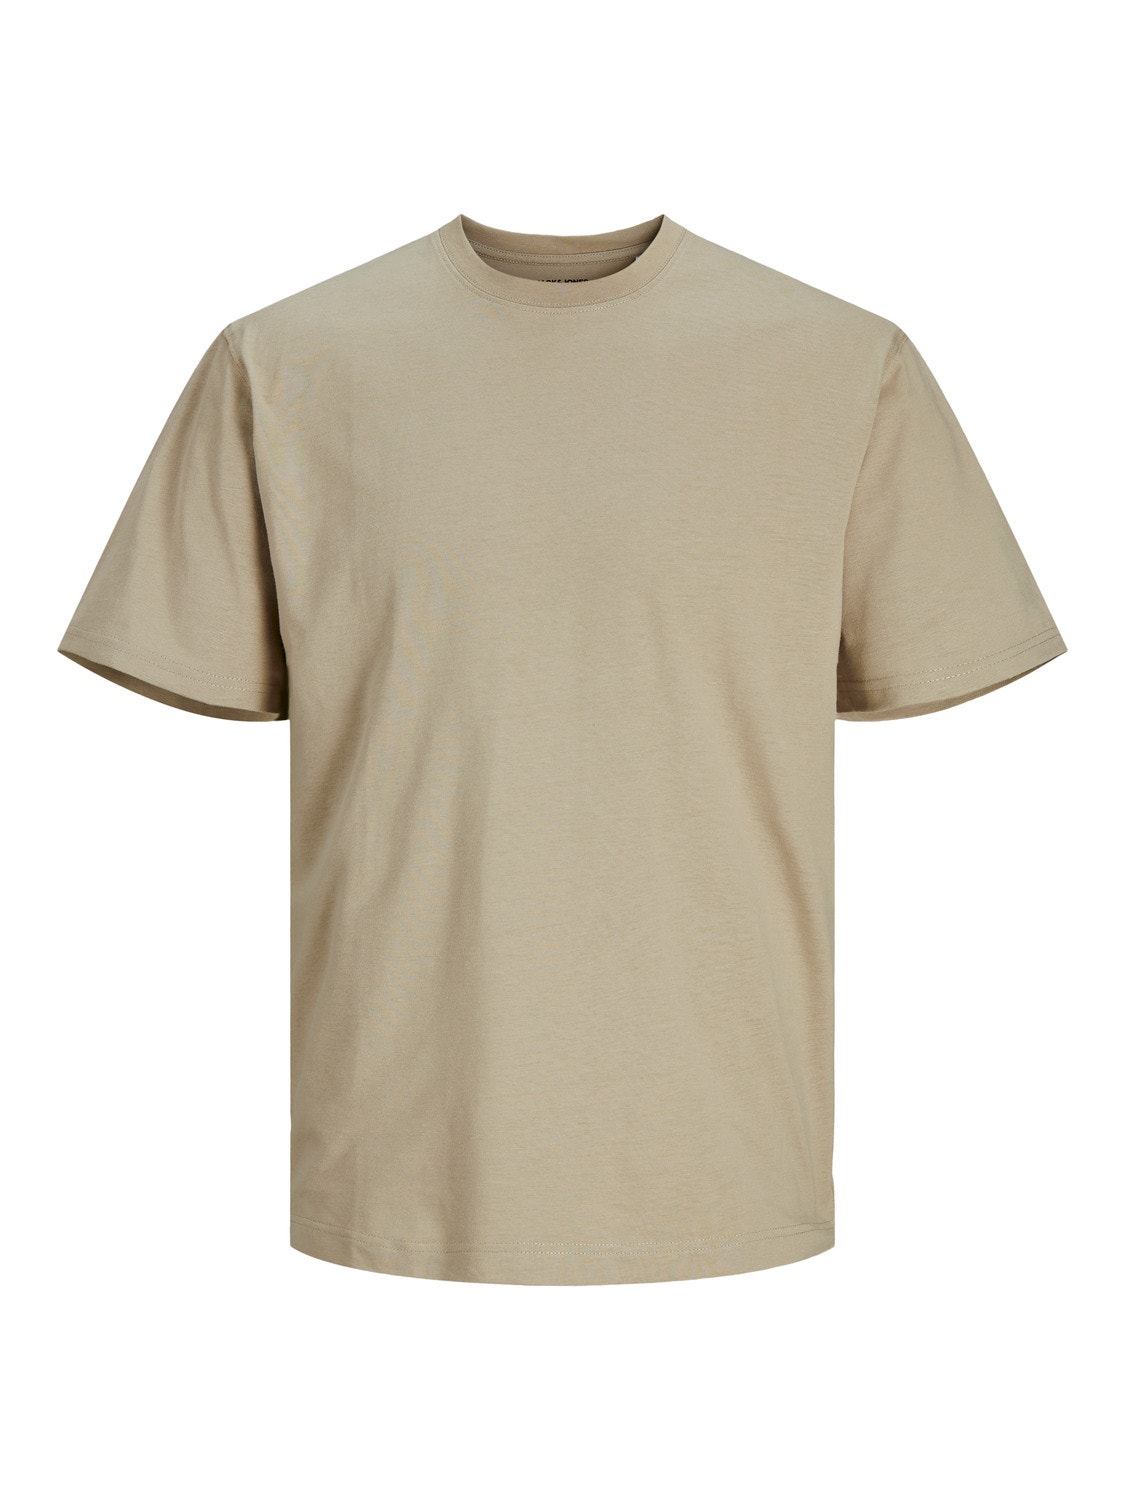 Plain Crew neck T-shirt | Jones® | Jack & Beige